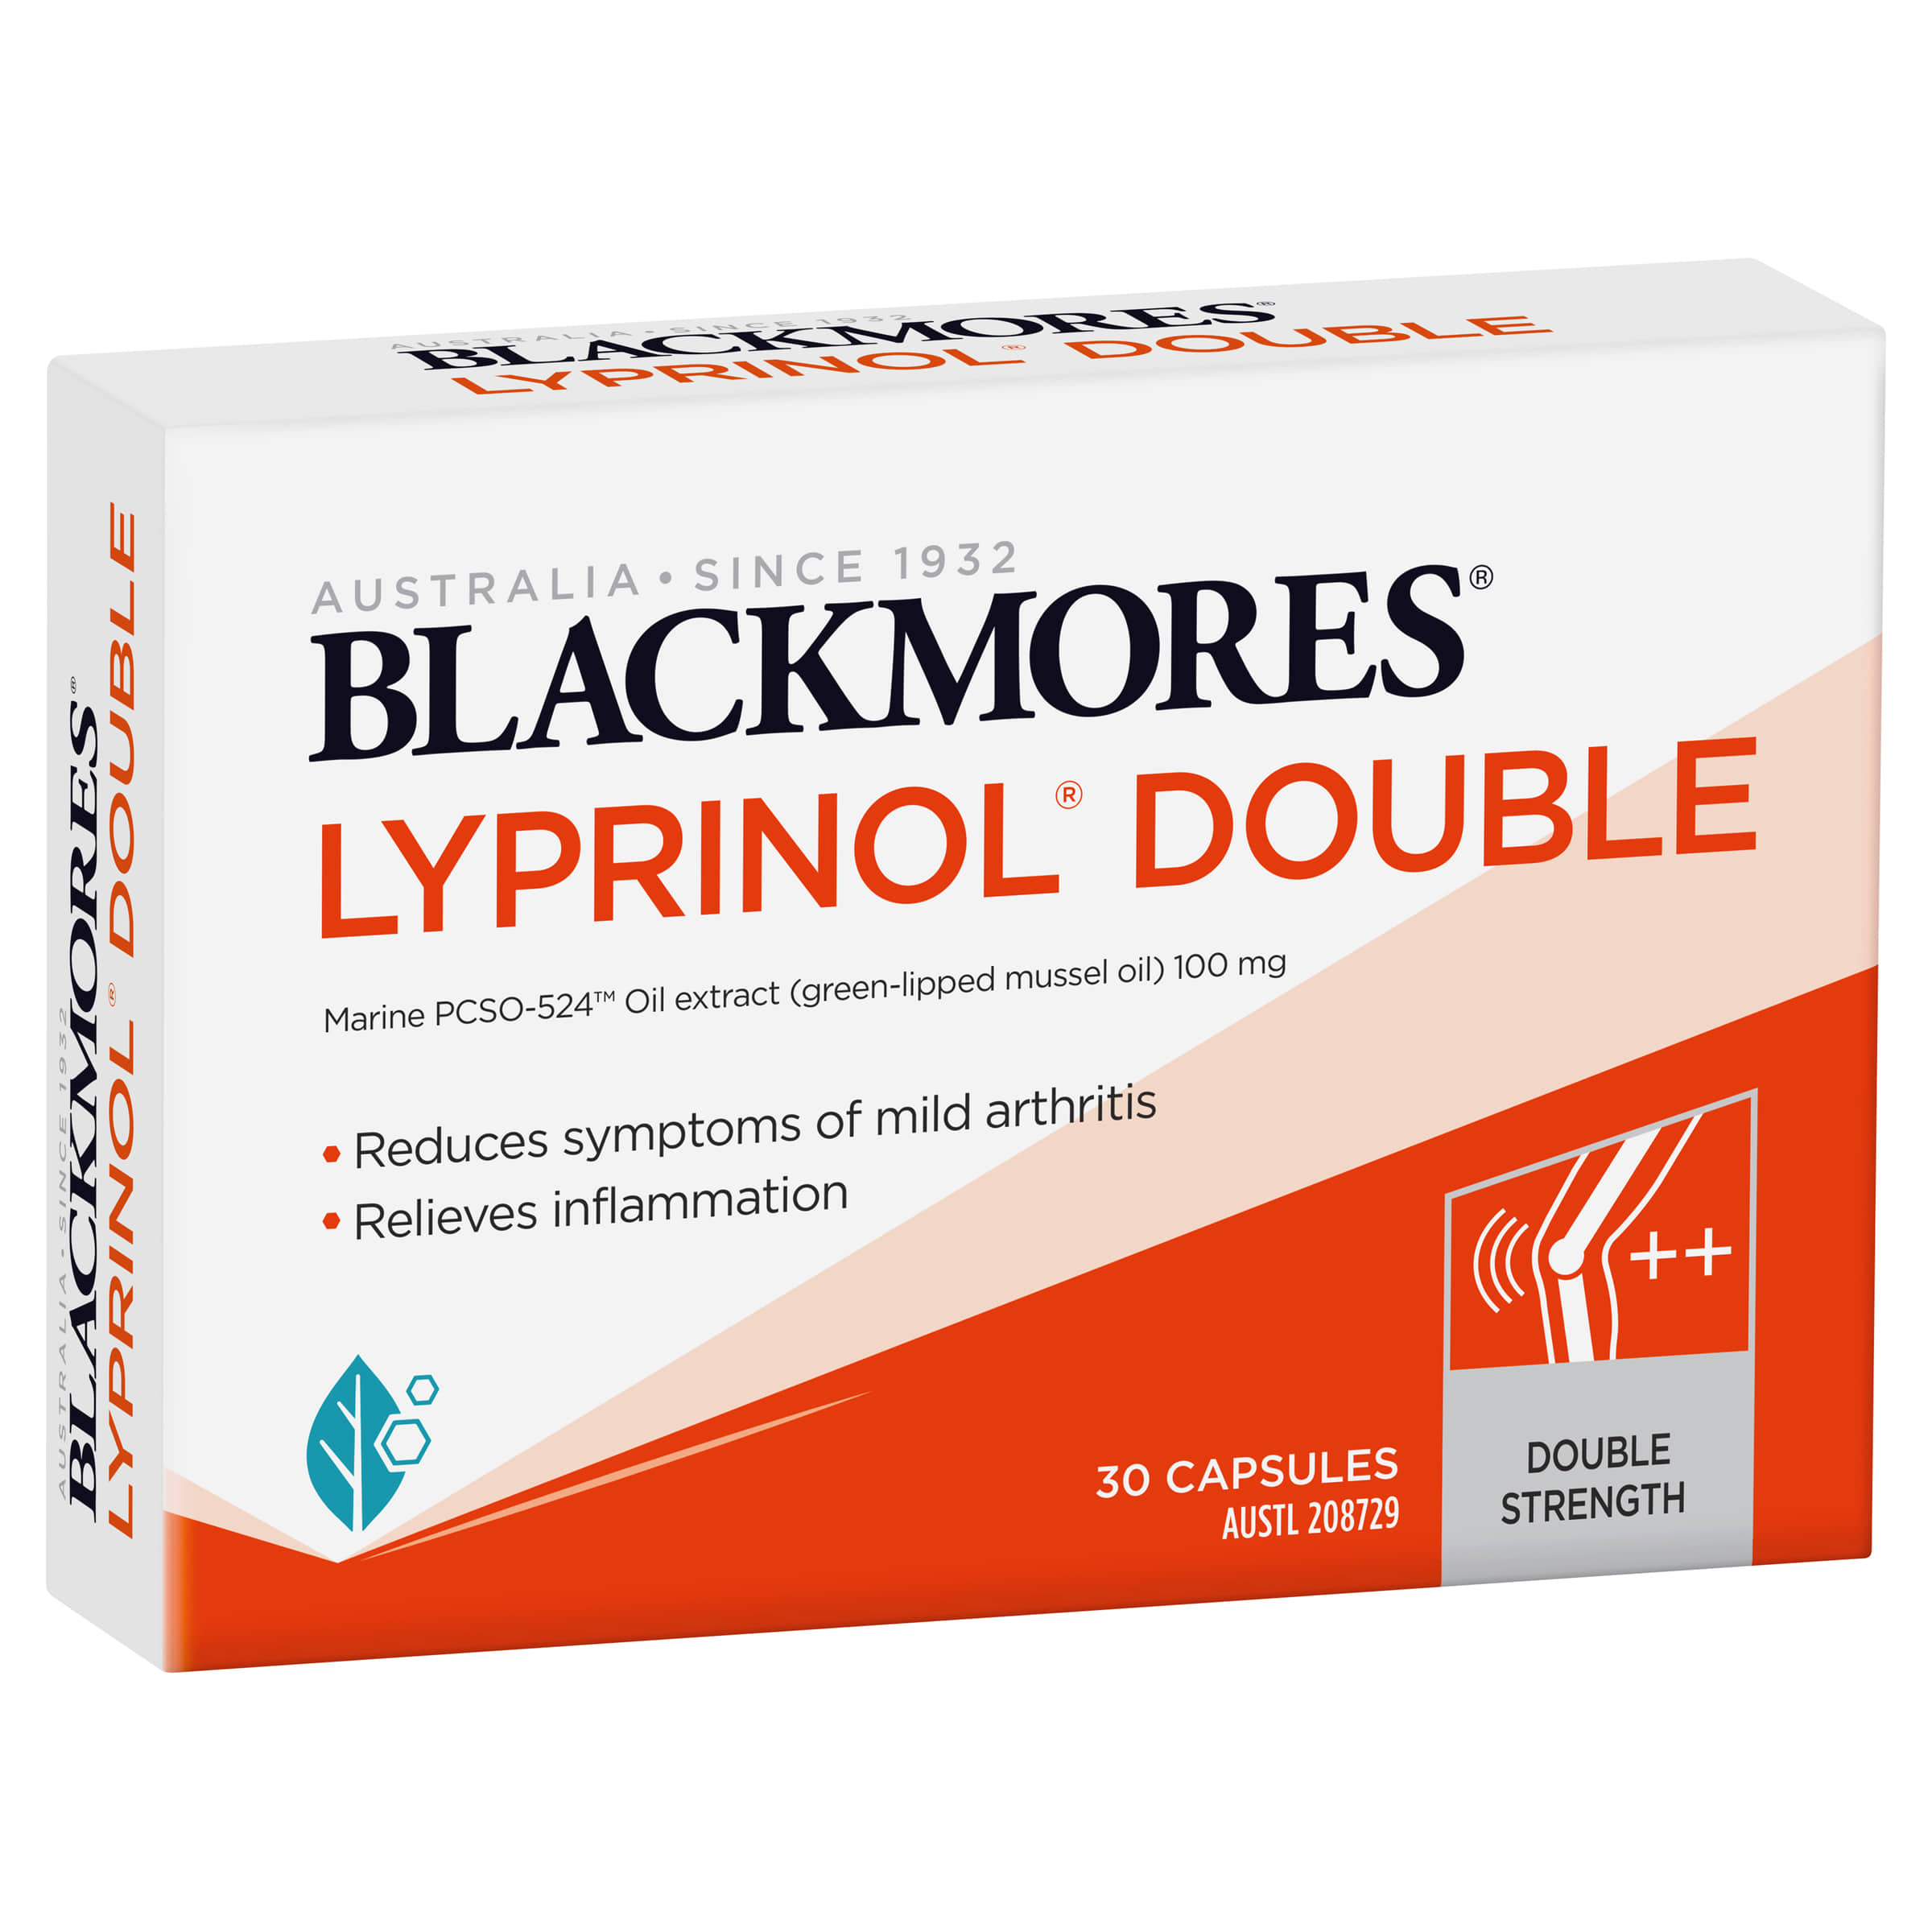 블랙모어스 리프리놀 더블 30 / Blackmores Lyprinol Double 30